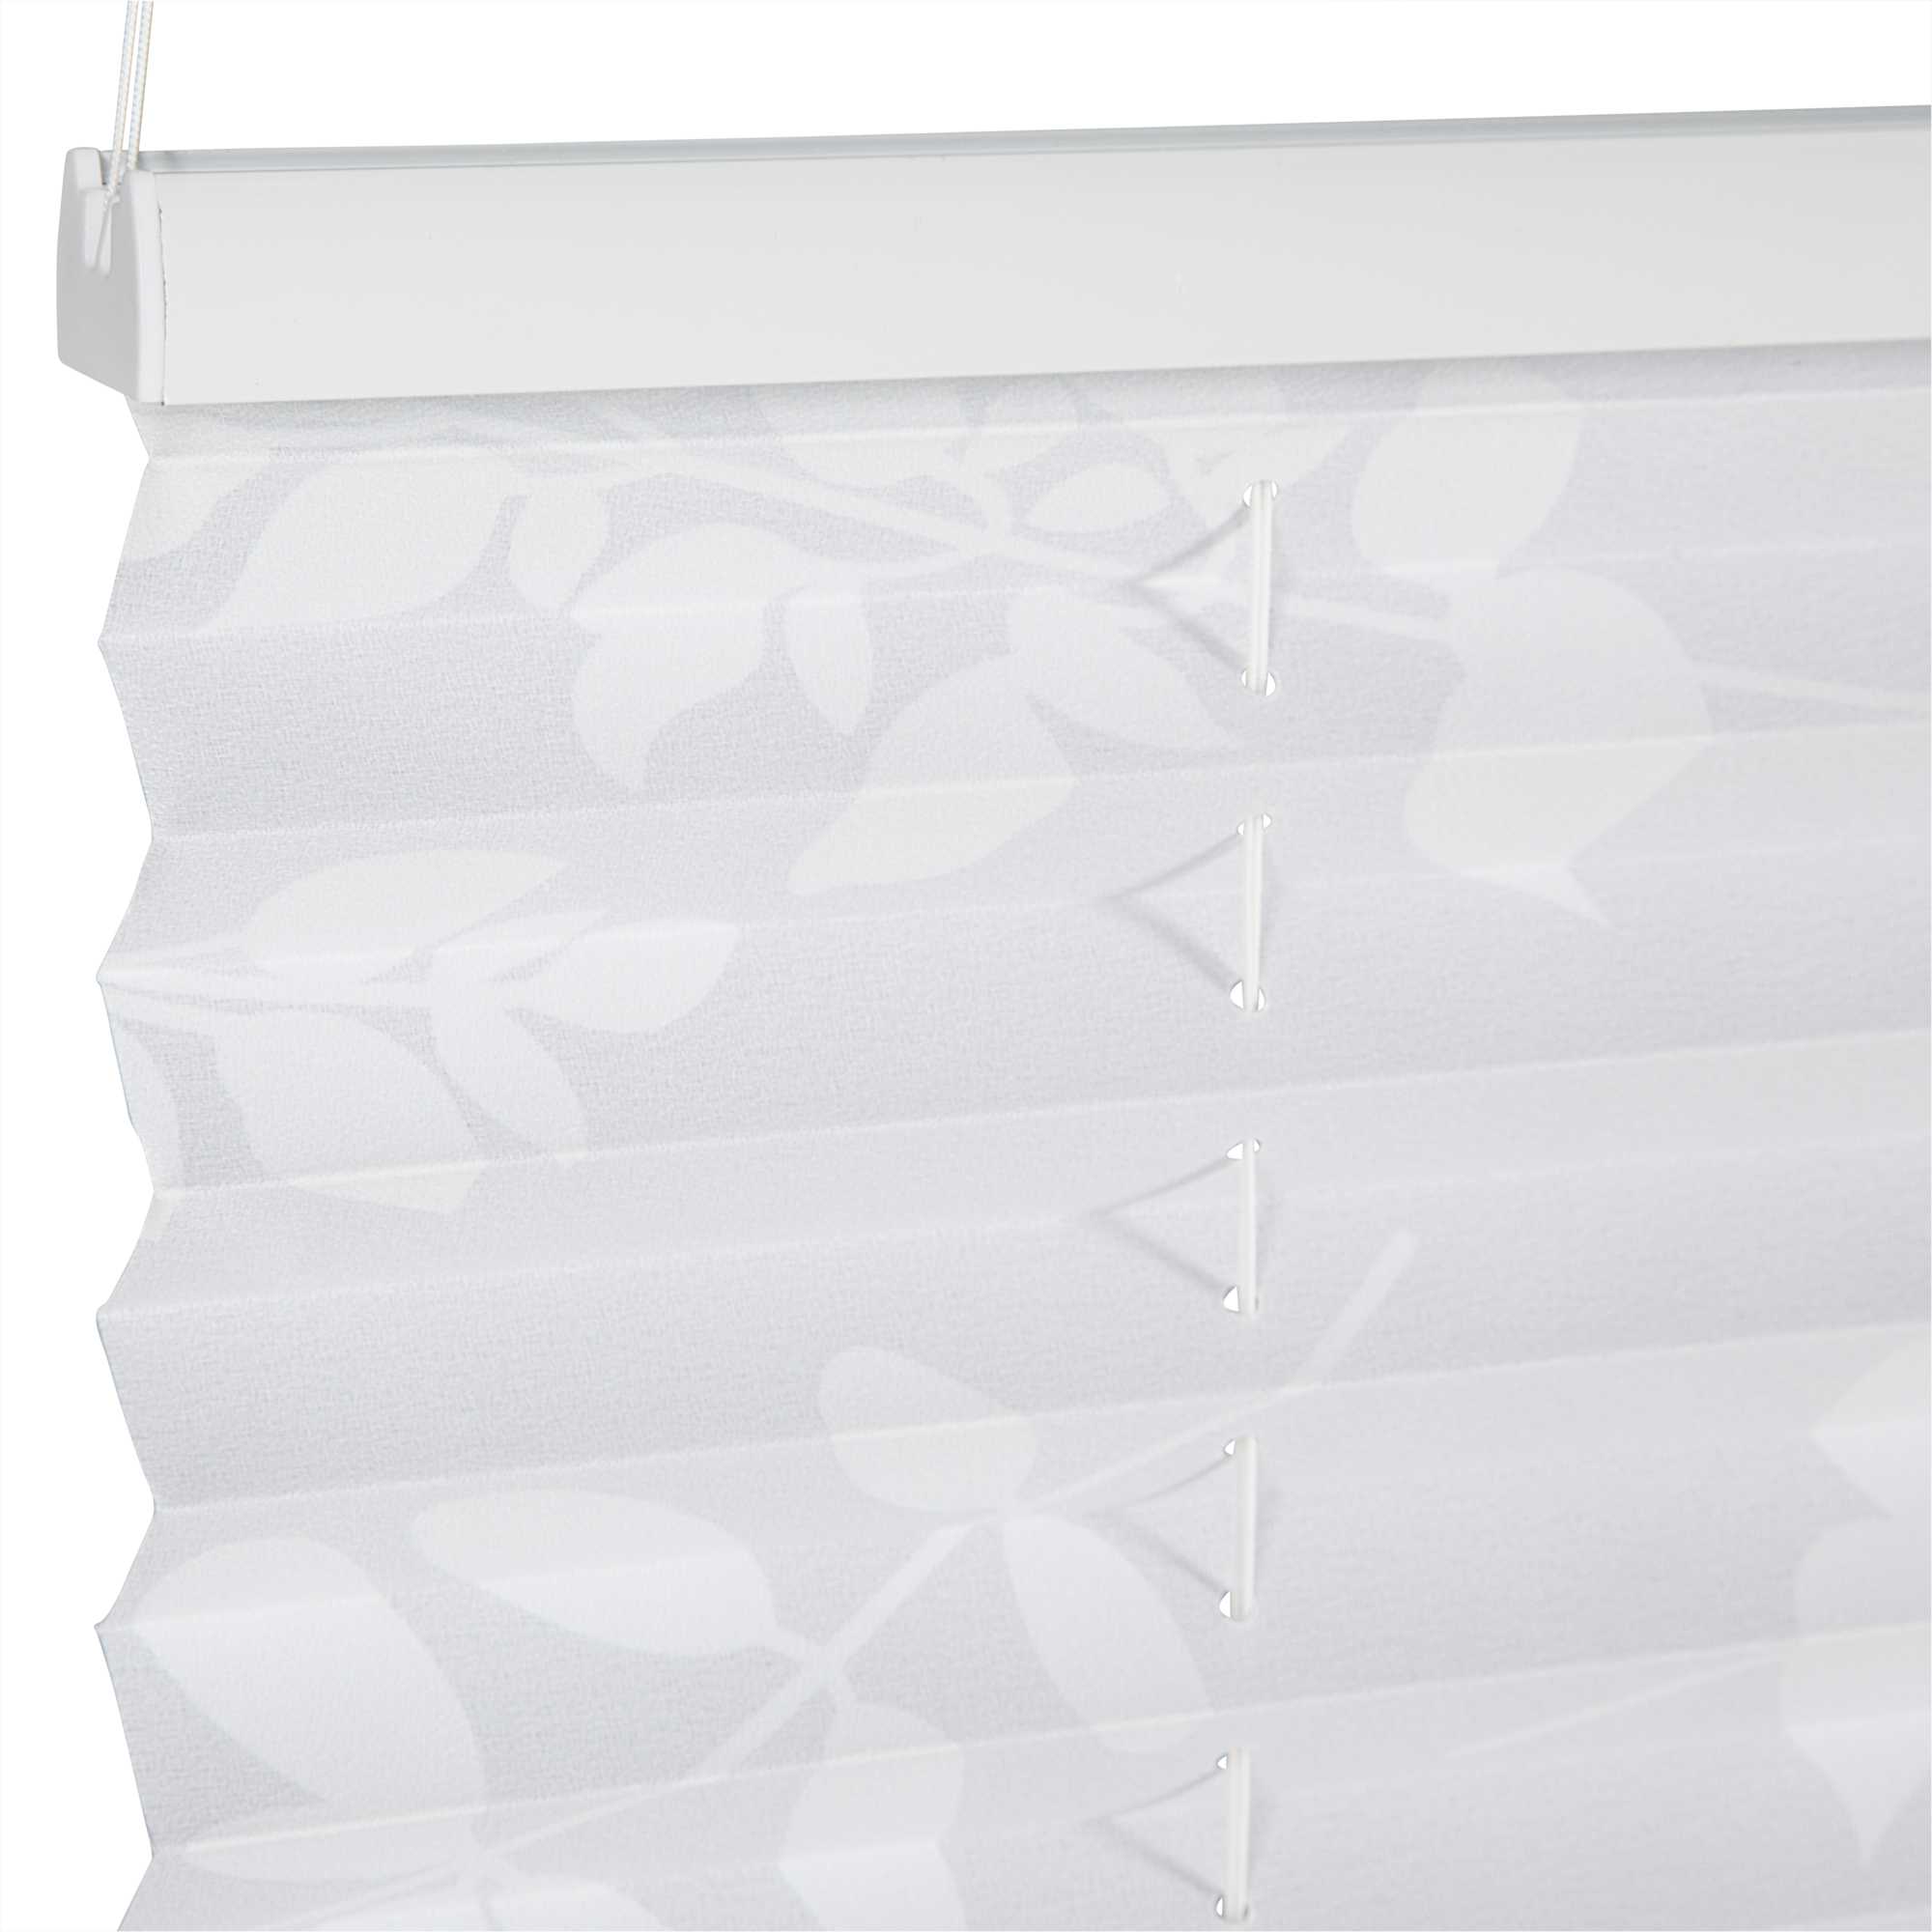 Tageslichtplissee 'Blüten' weiß 80 x 130 cm + product picture